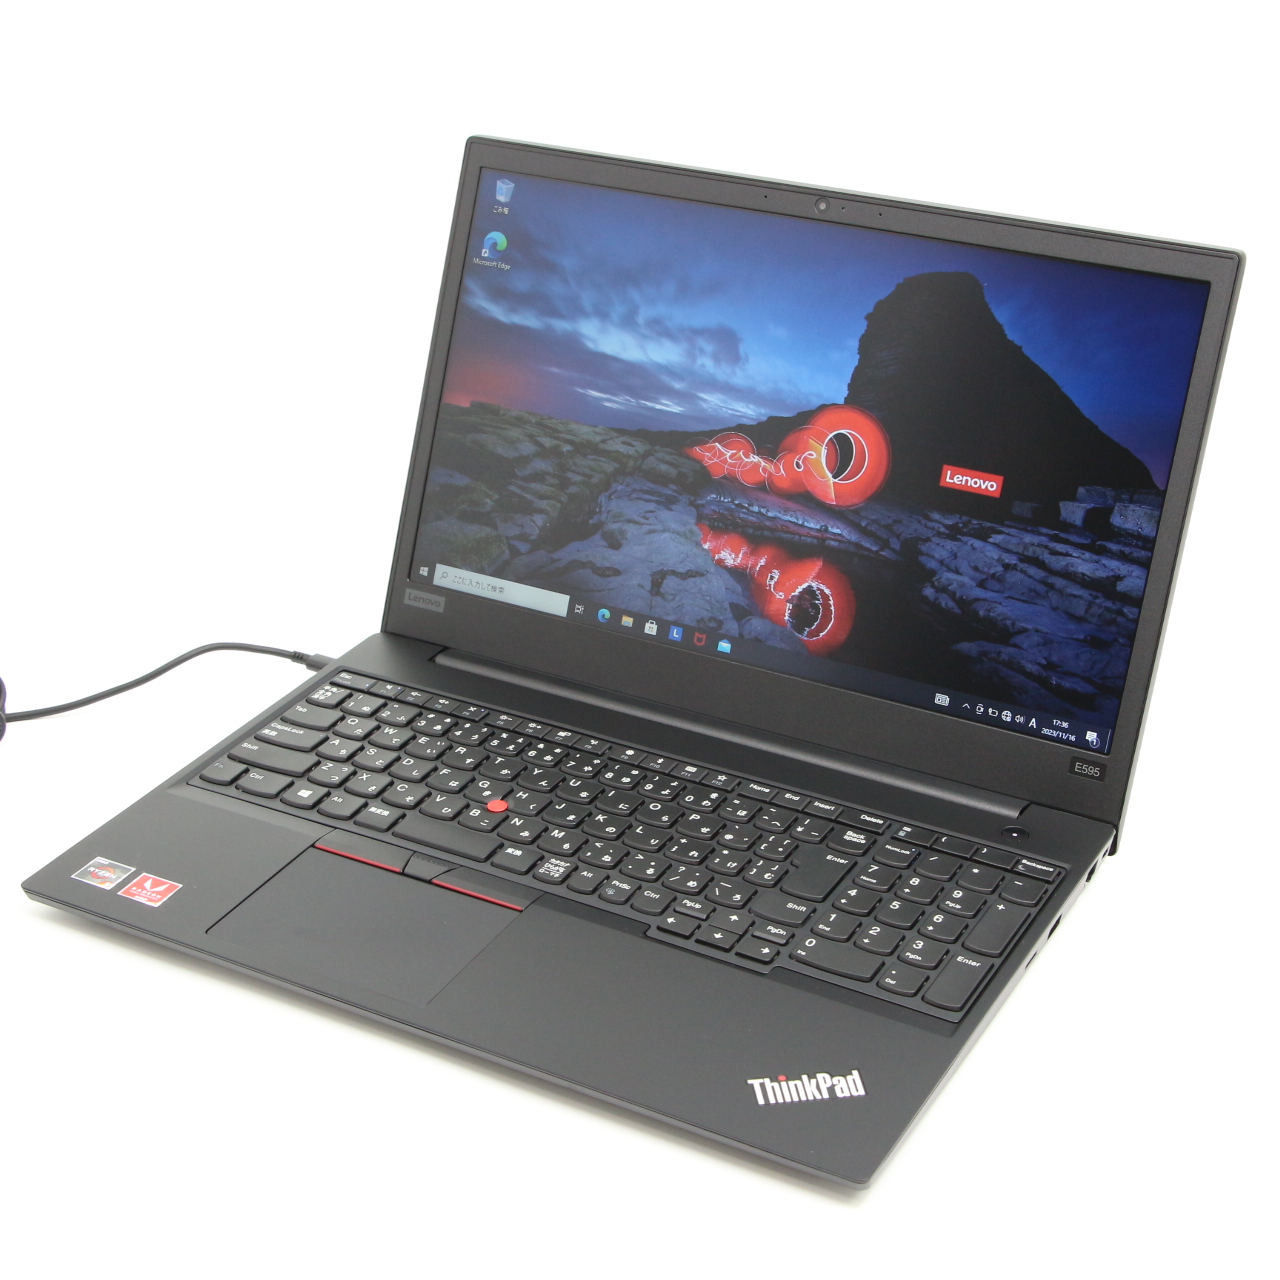 ThinkPad E595 / 15.6インチ / AMD Ryzen 5-3500U / 2.1GHz / 8GB / SSD 128GB